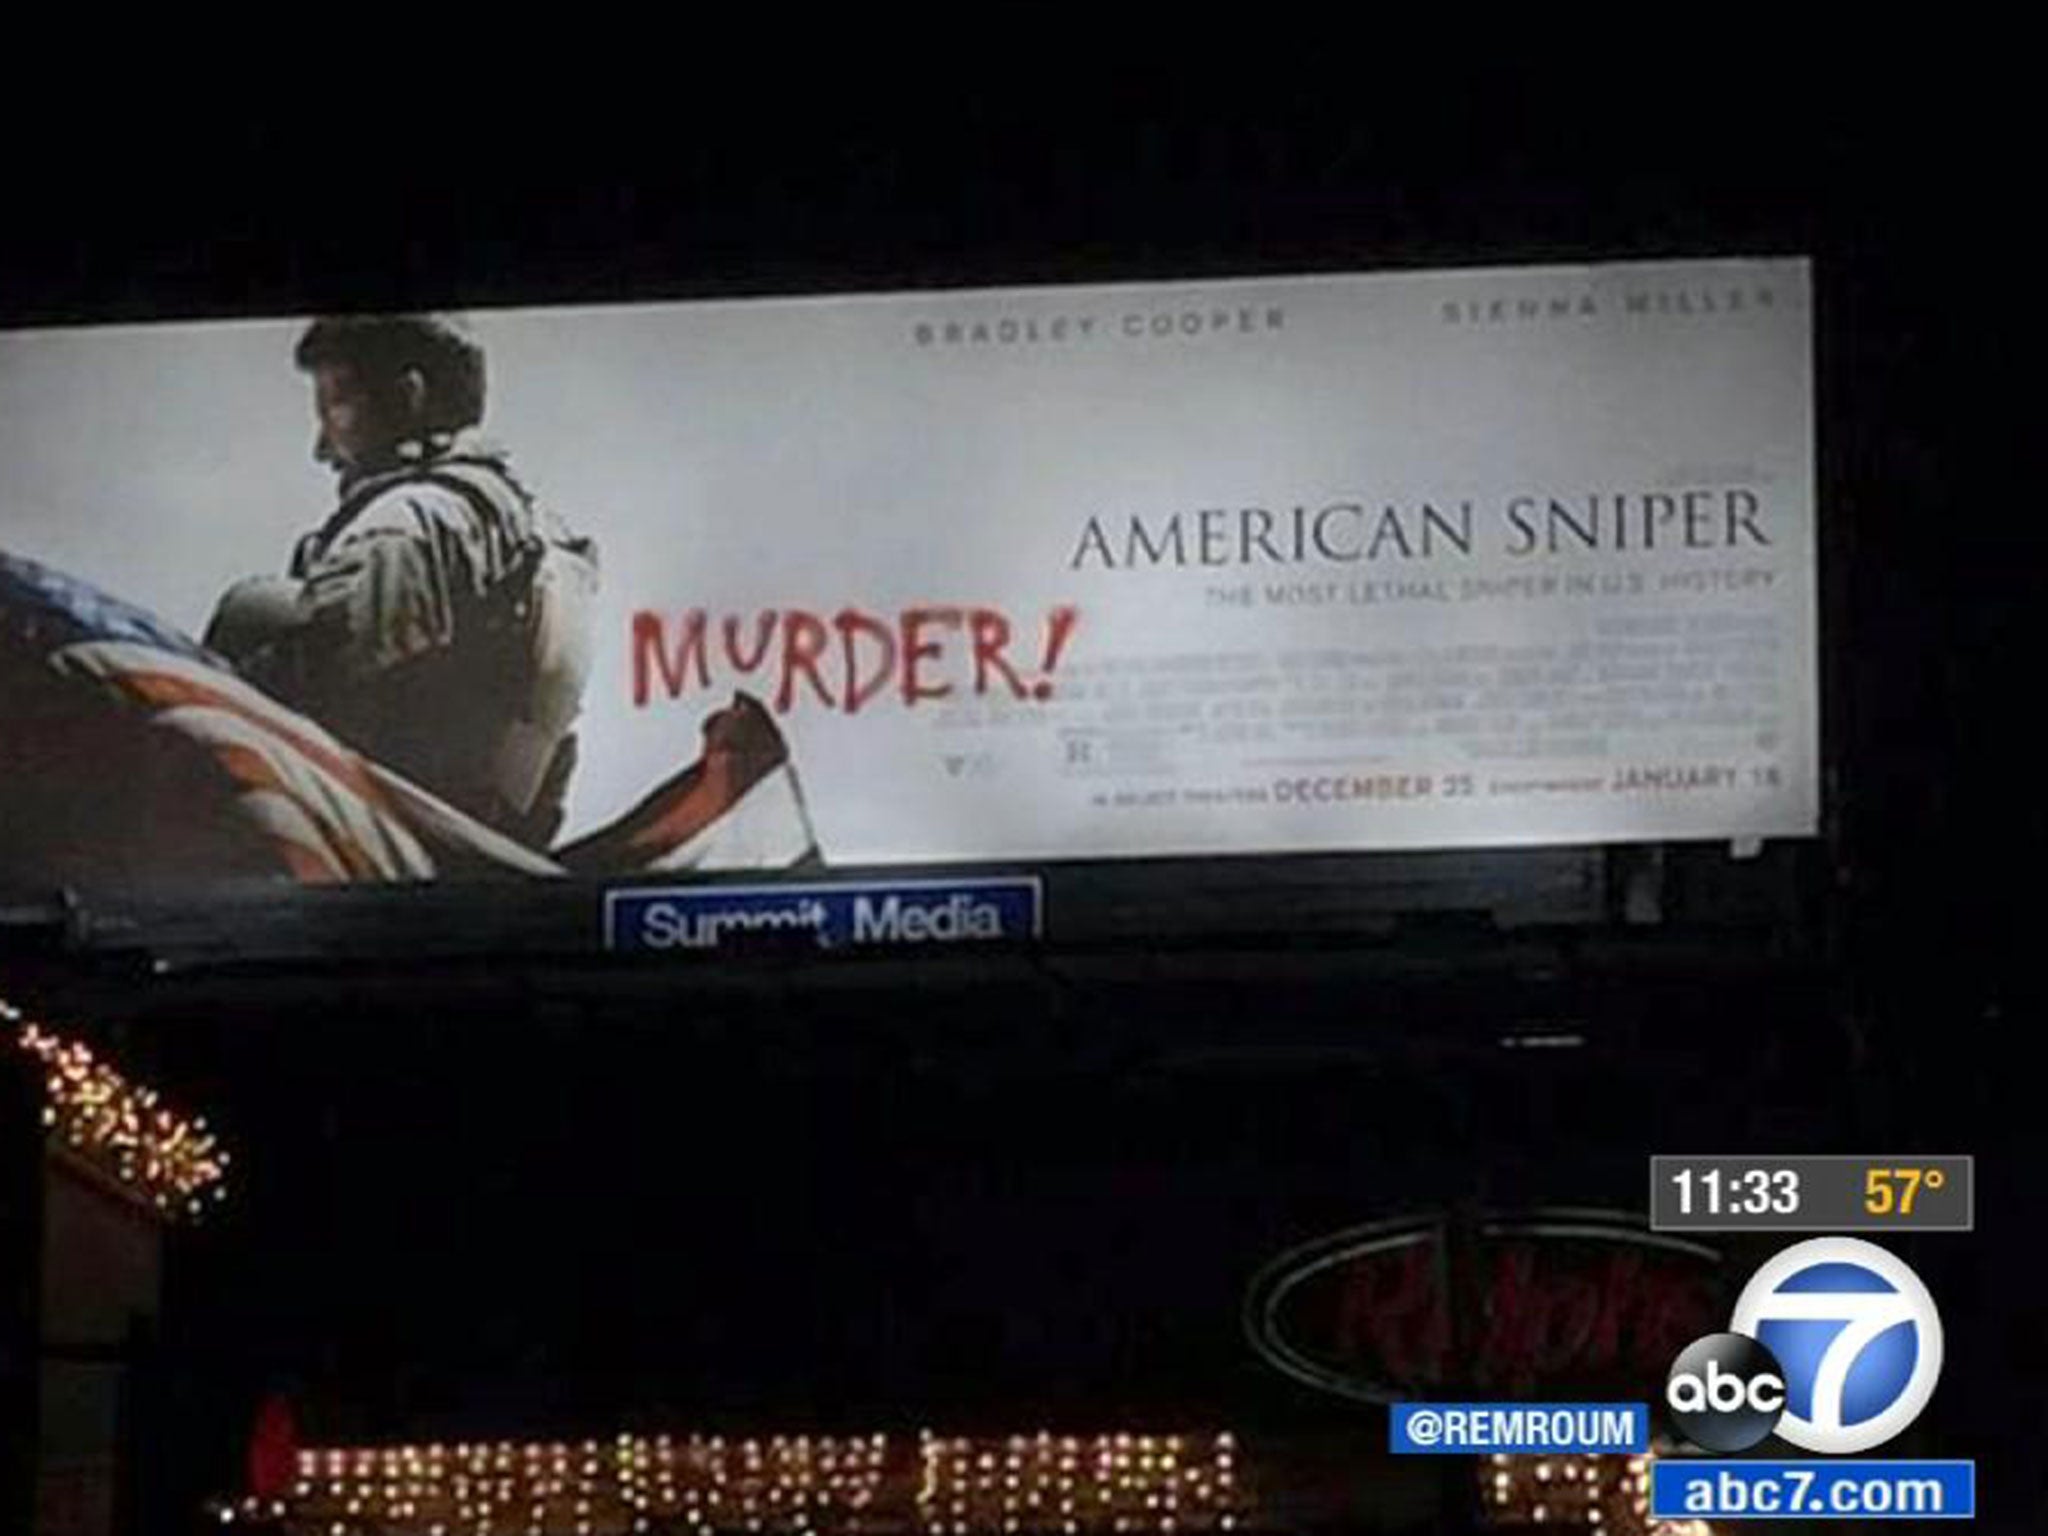 The vandalised billboard in west LA